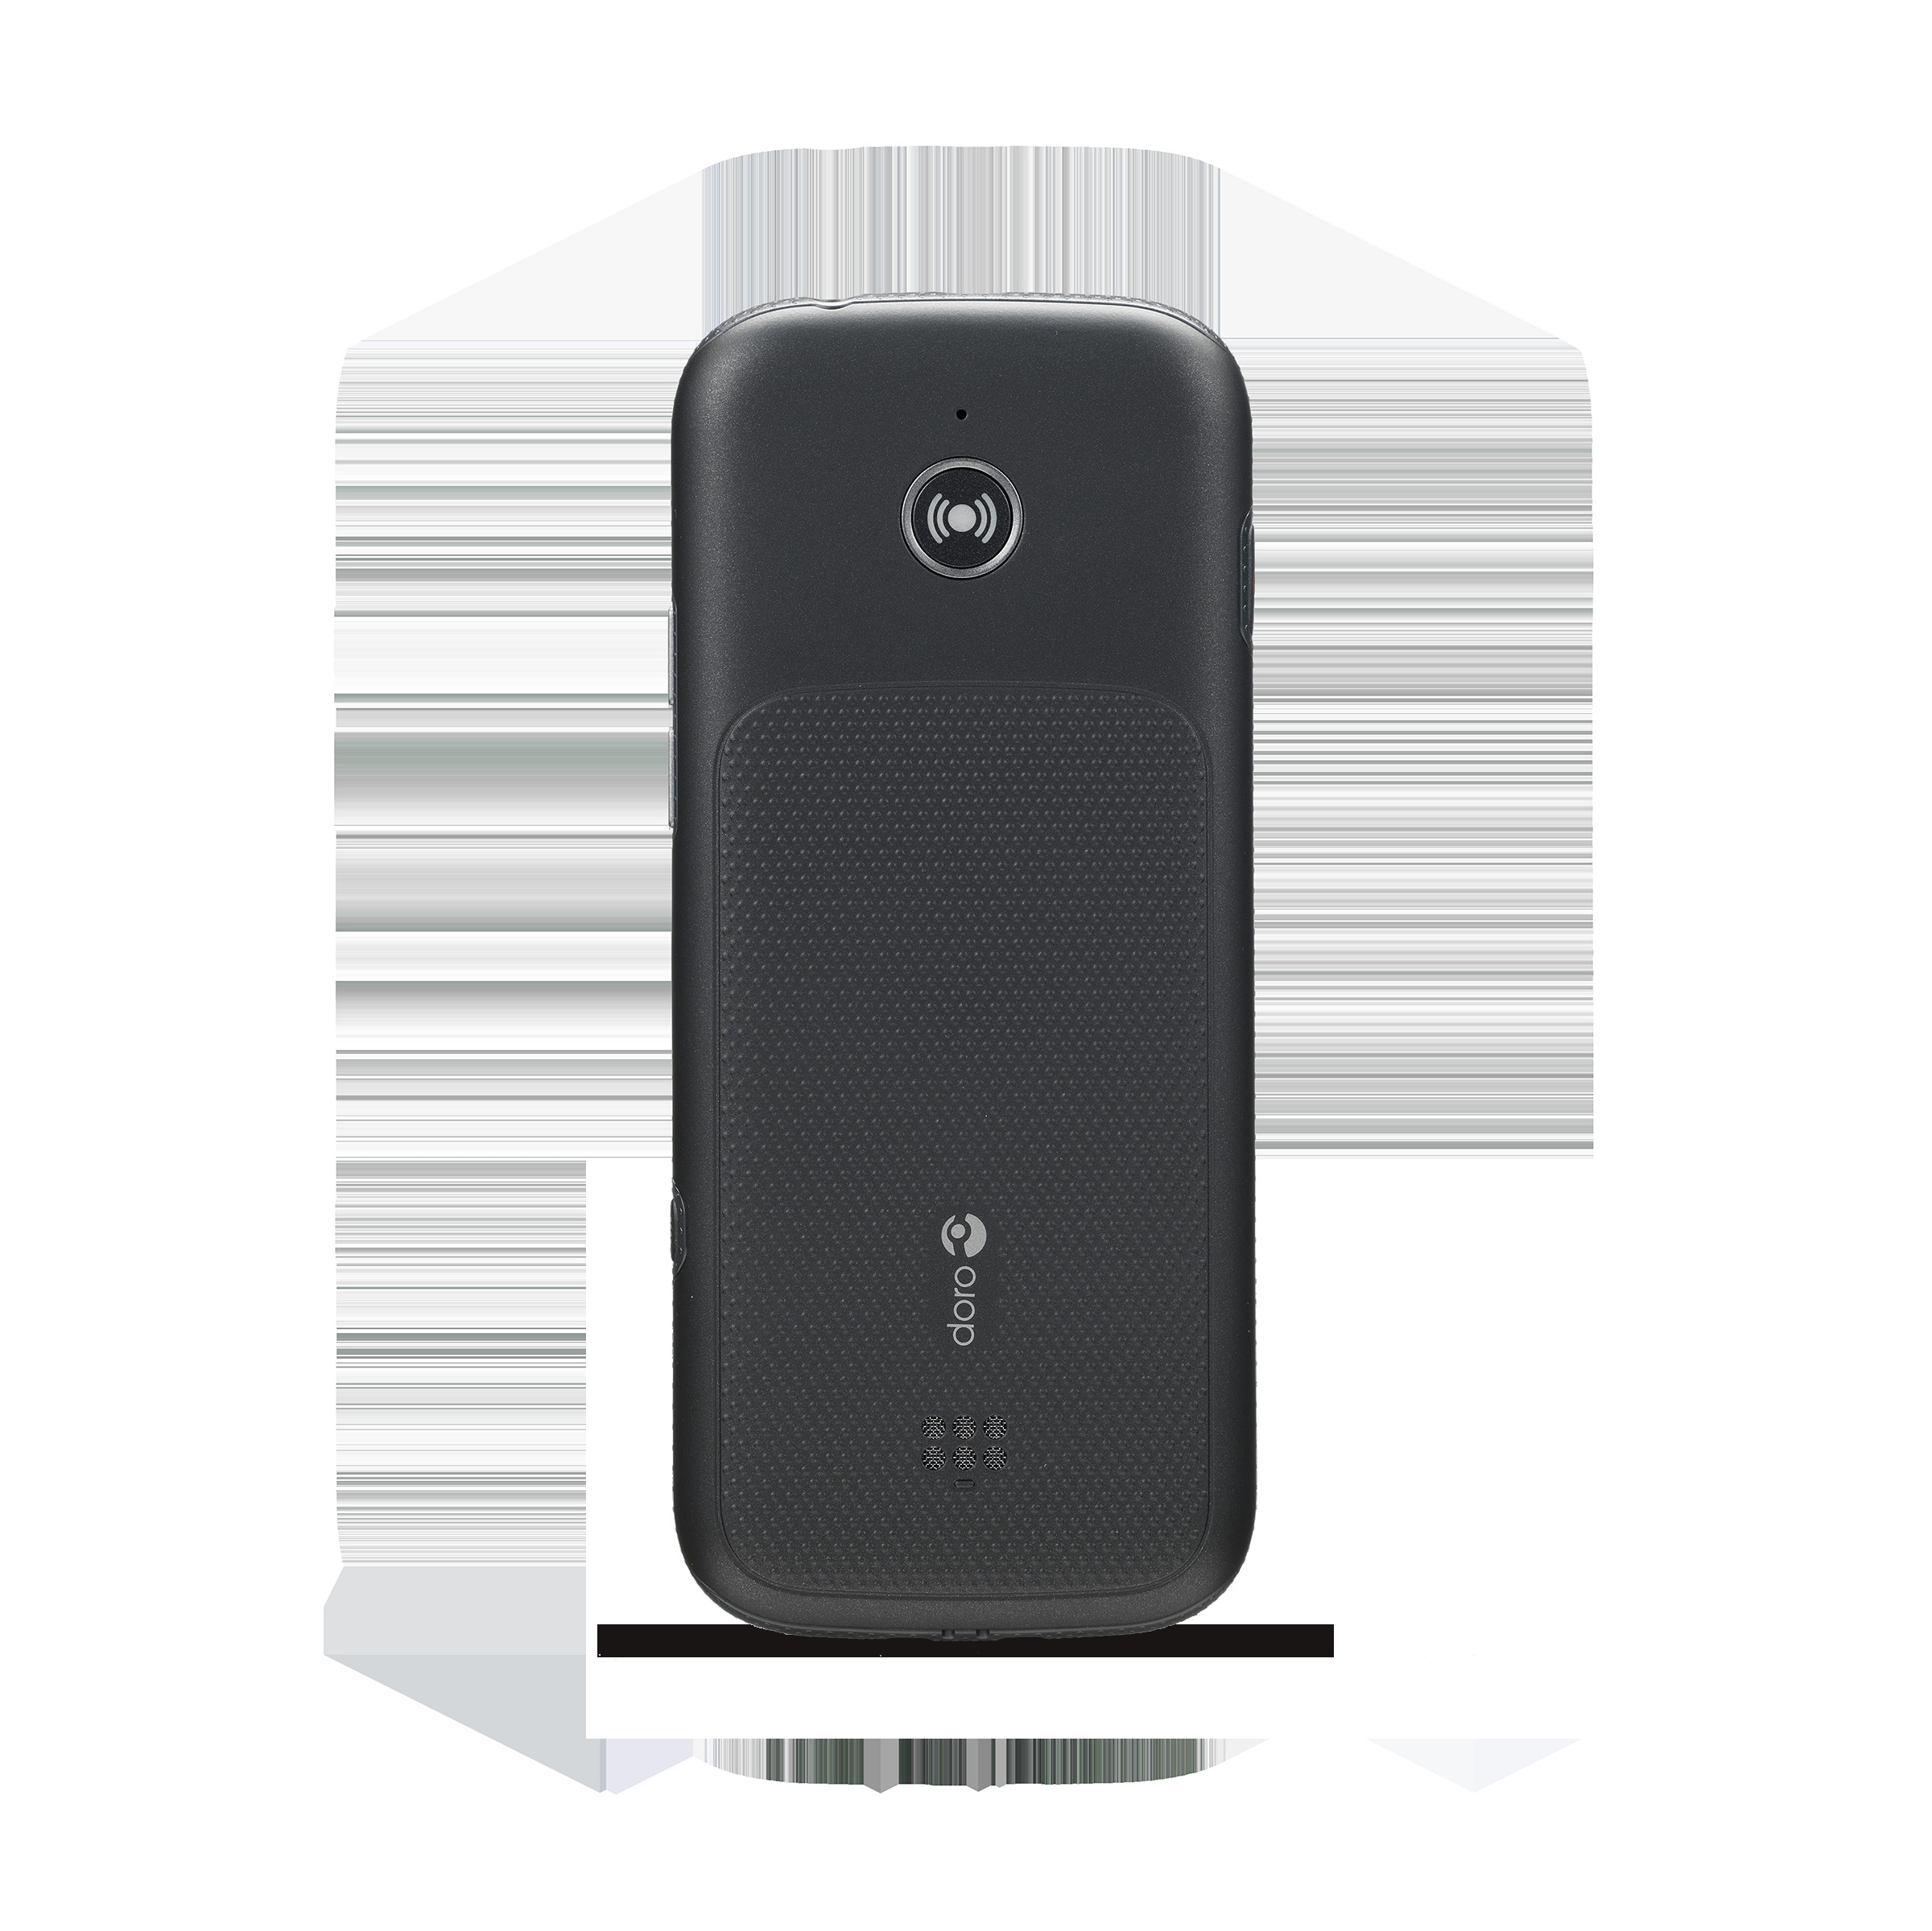 Doro Smartphone »780X«, schwarz/weiß, 7,11 cm/2,8 Zoll, 4 GB Speicherplatz  ➥ 3 Jahre XXL Garantie | UNIVERSAL